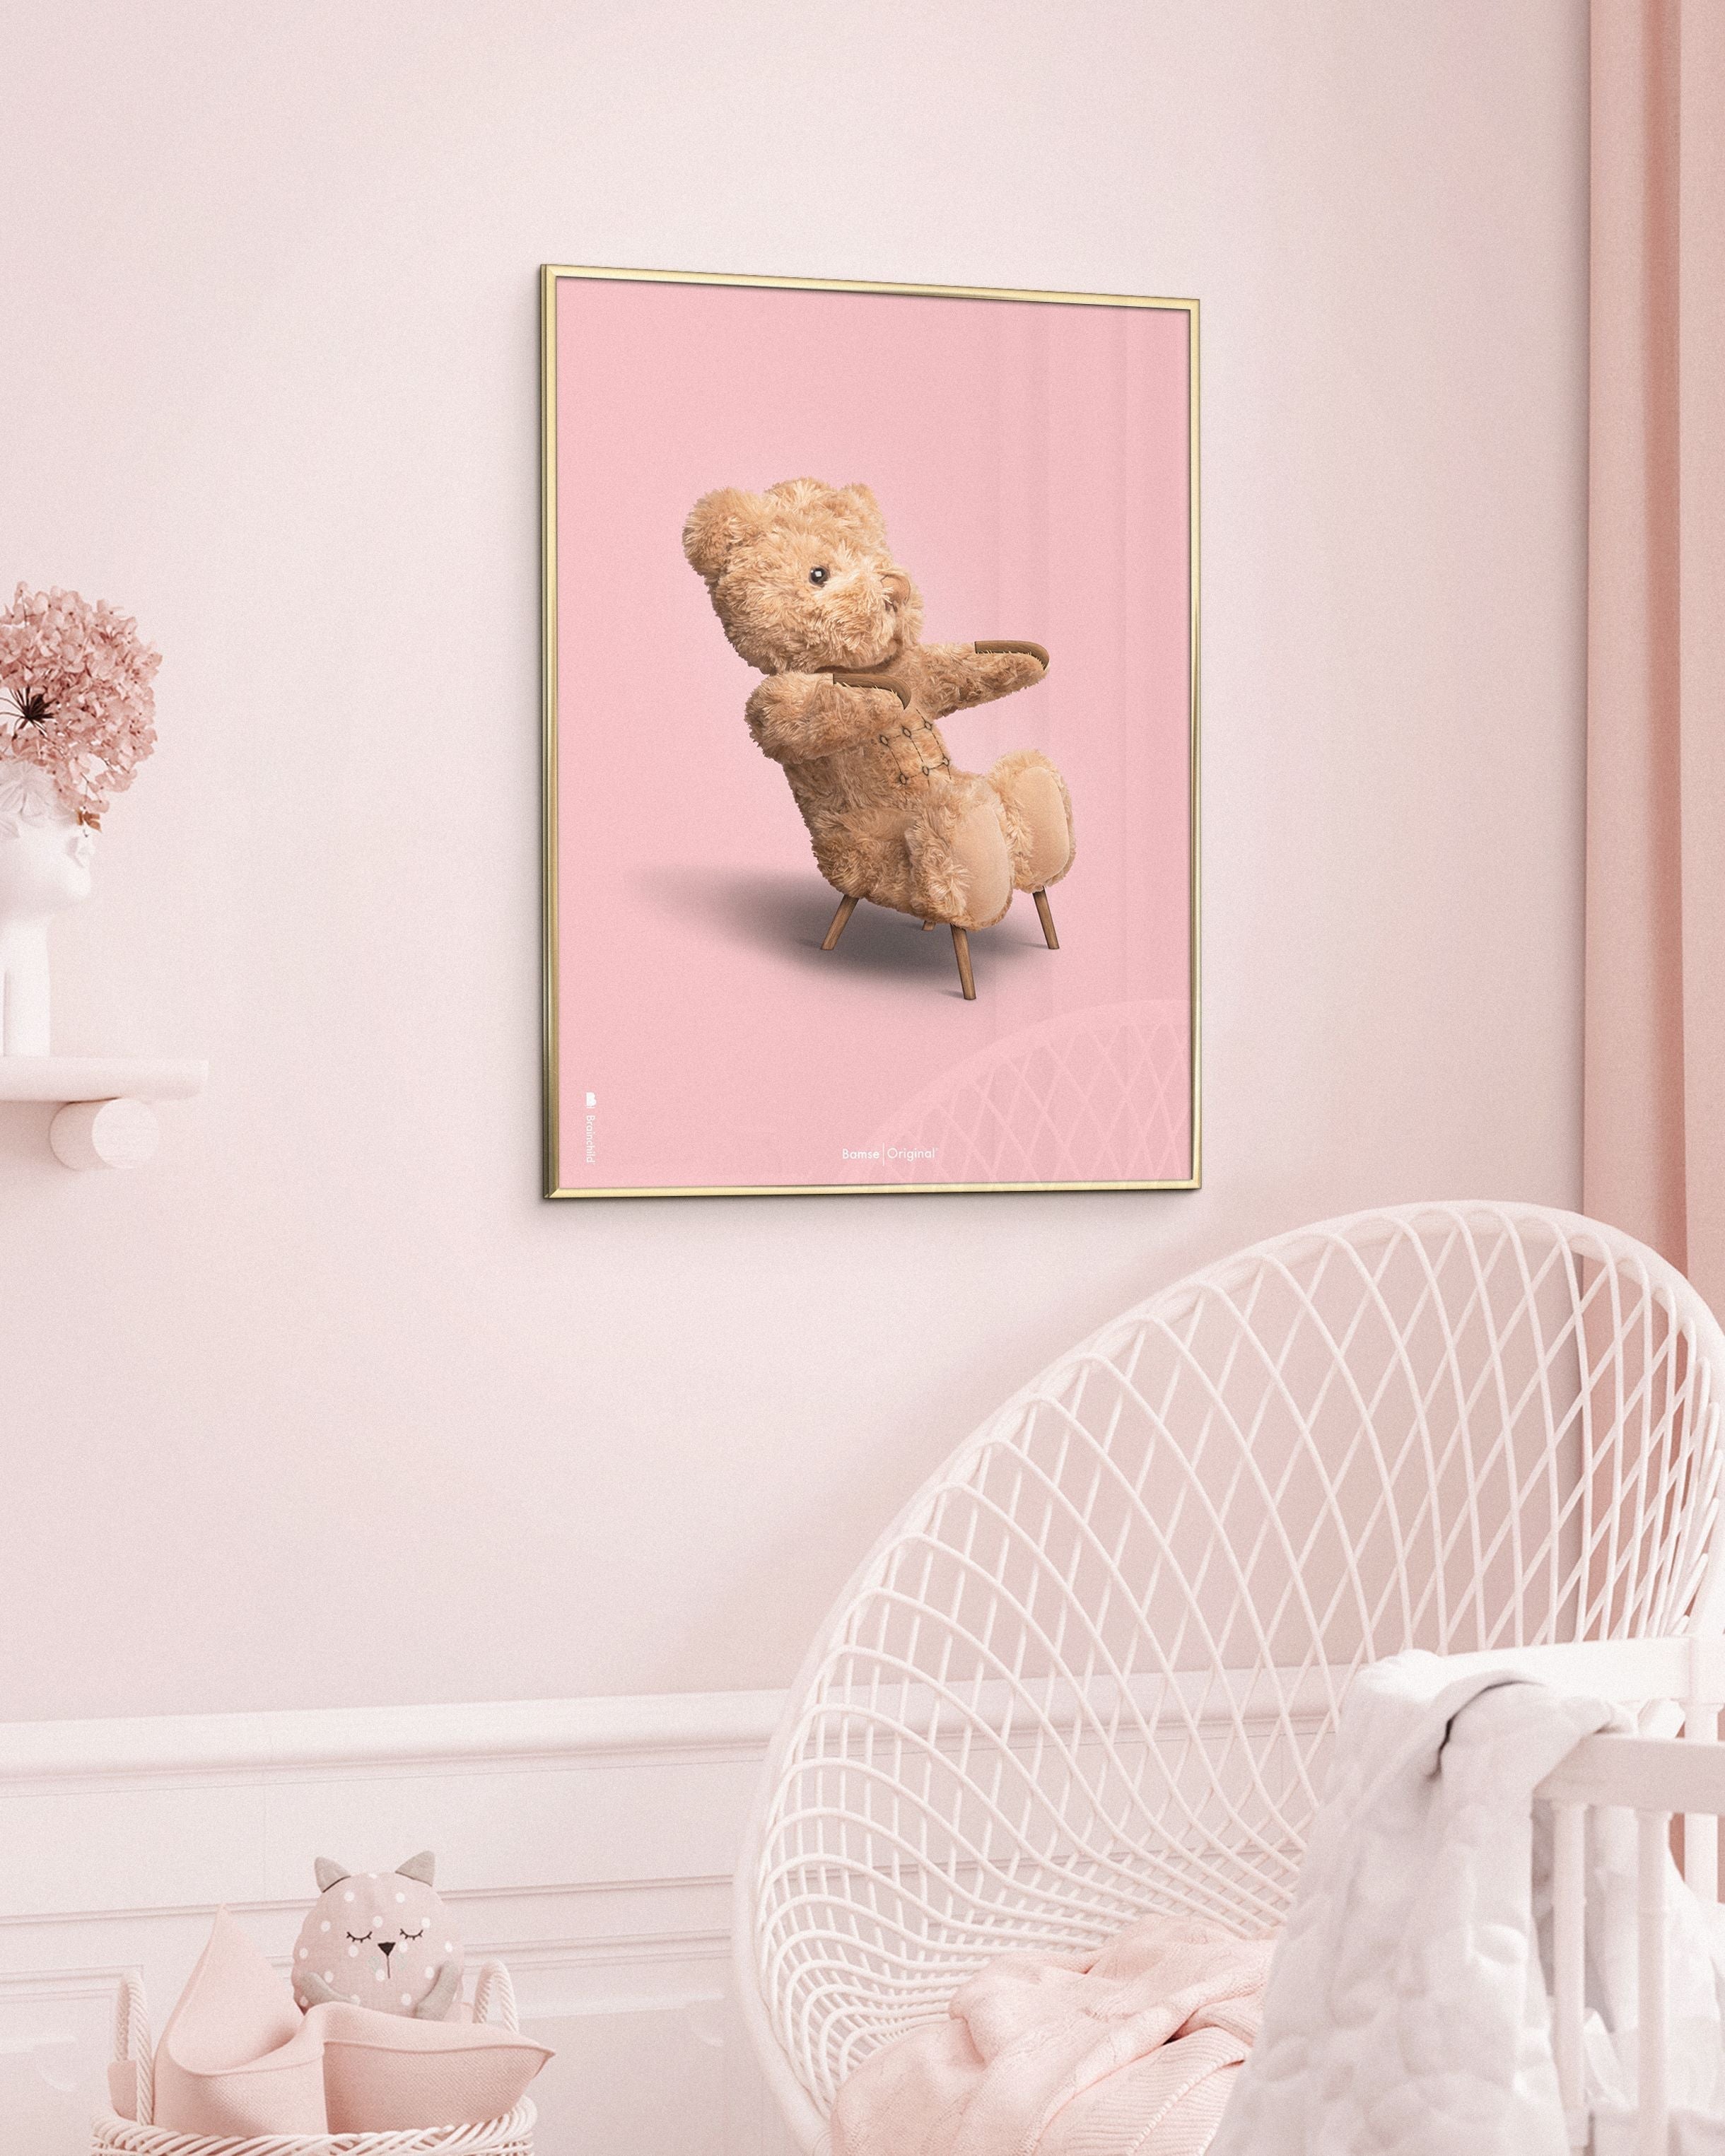 Hjernebarn bamse klassisk plakatramme laget av svart lakkert tre 50x70 cm, rosa bakgrunn